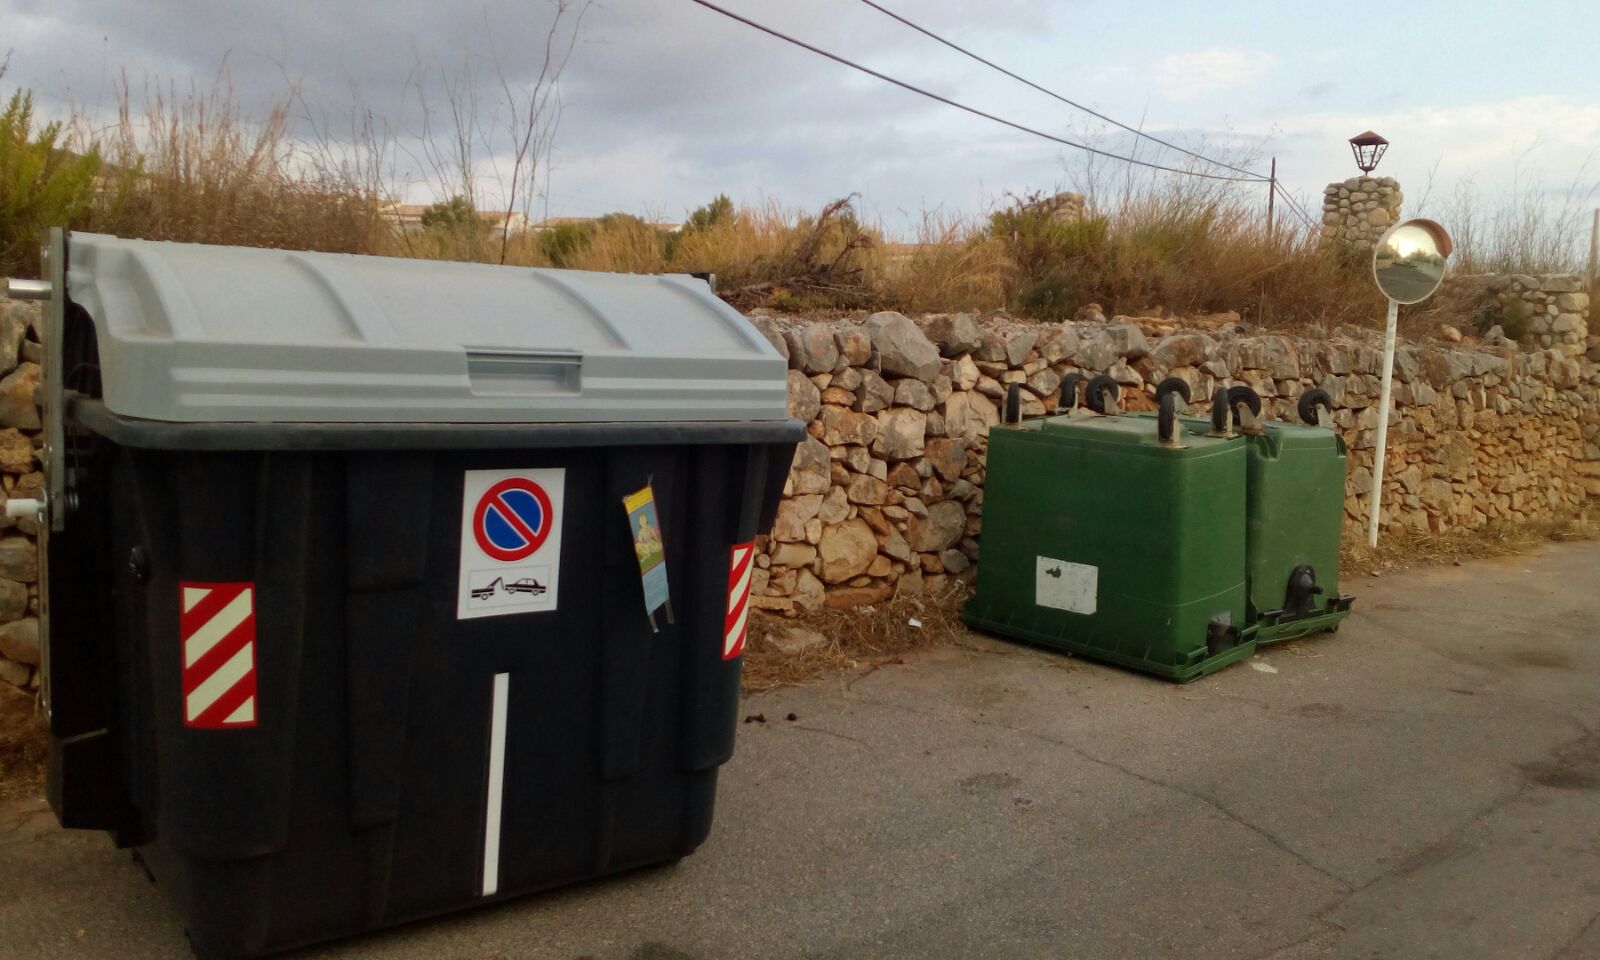 Peníscola, els nous camions de recollida d'escombraries comencen a operar al municipi